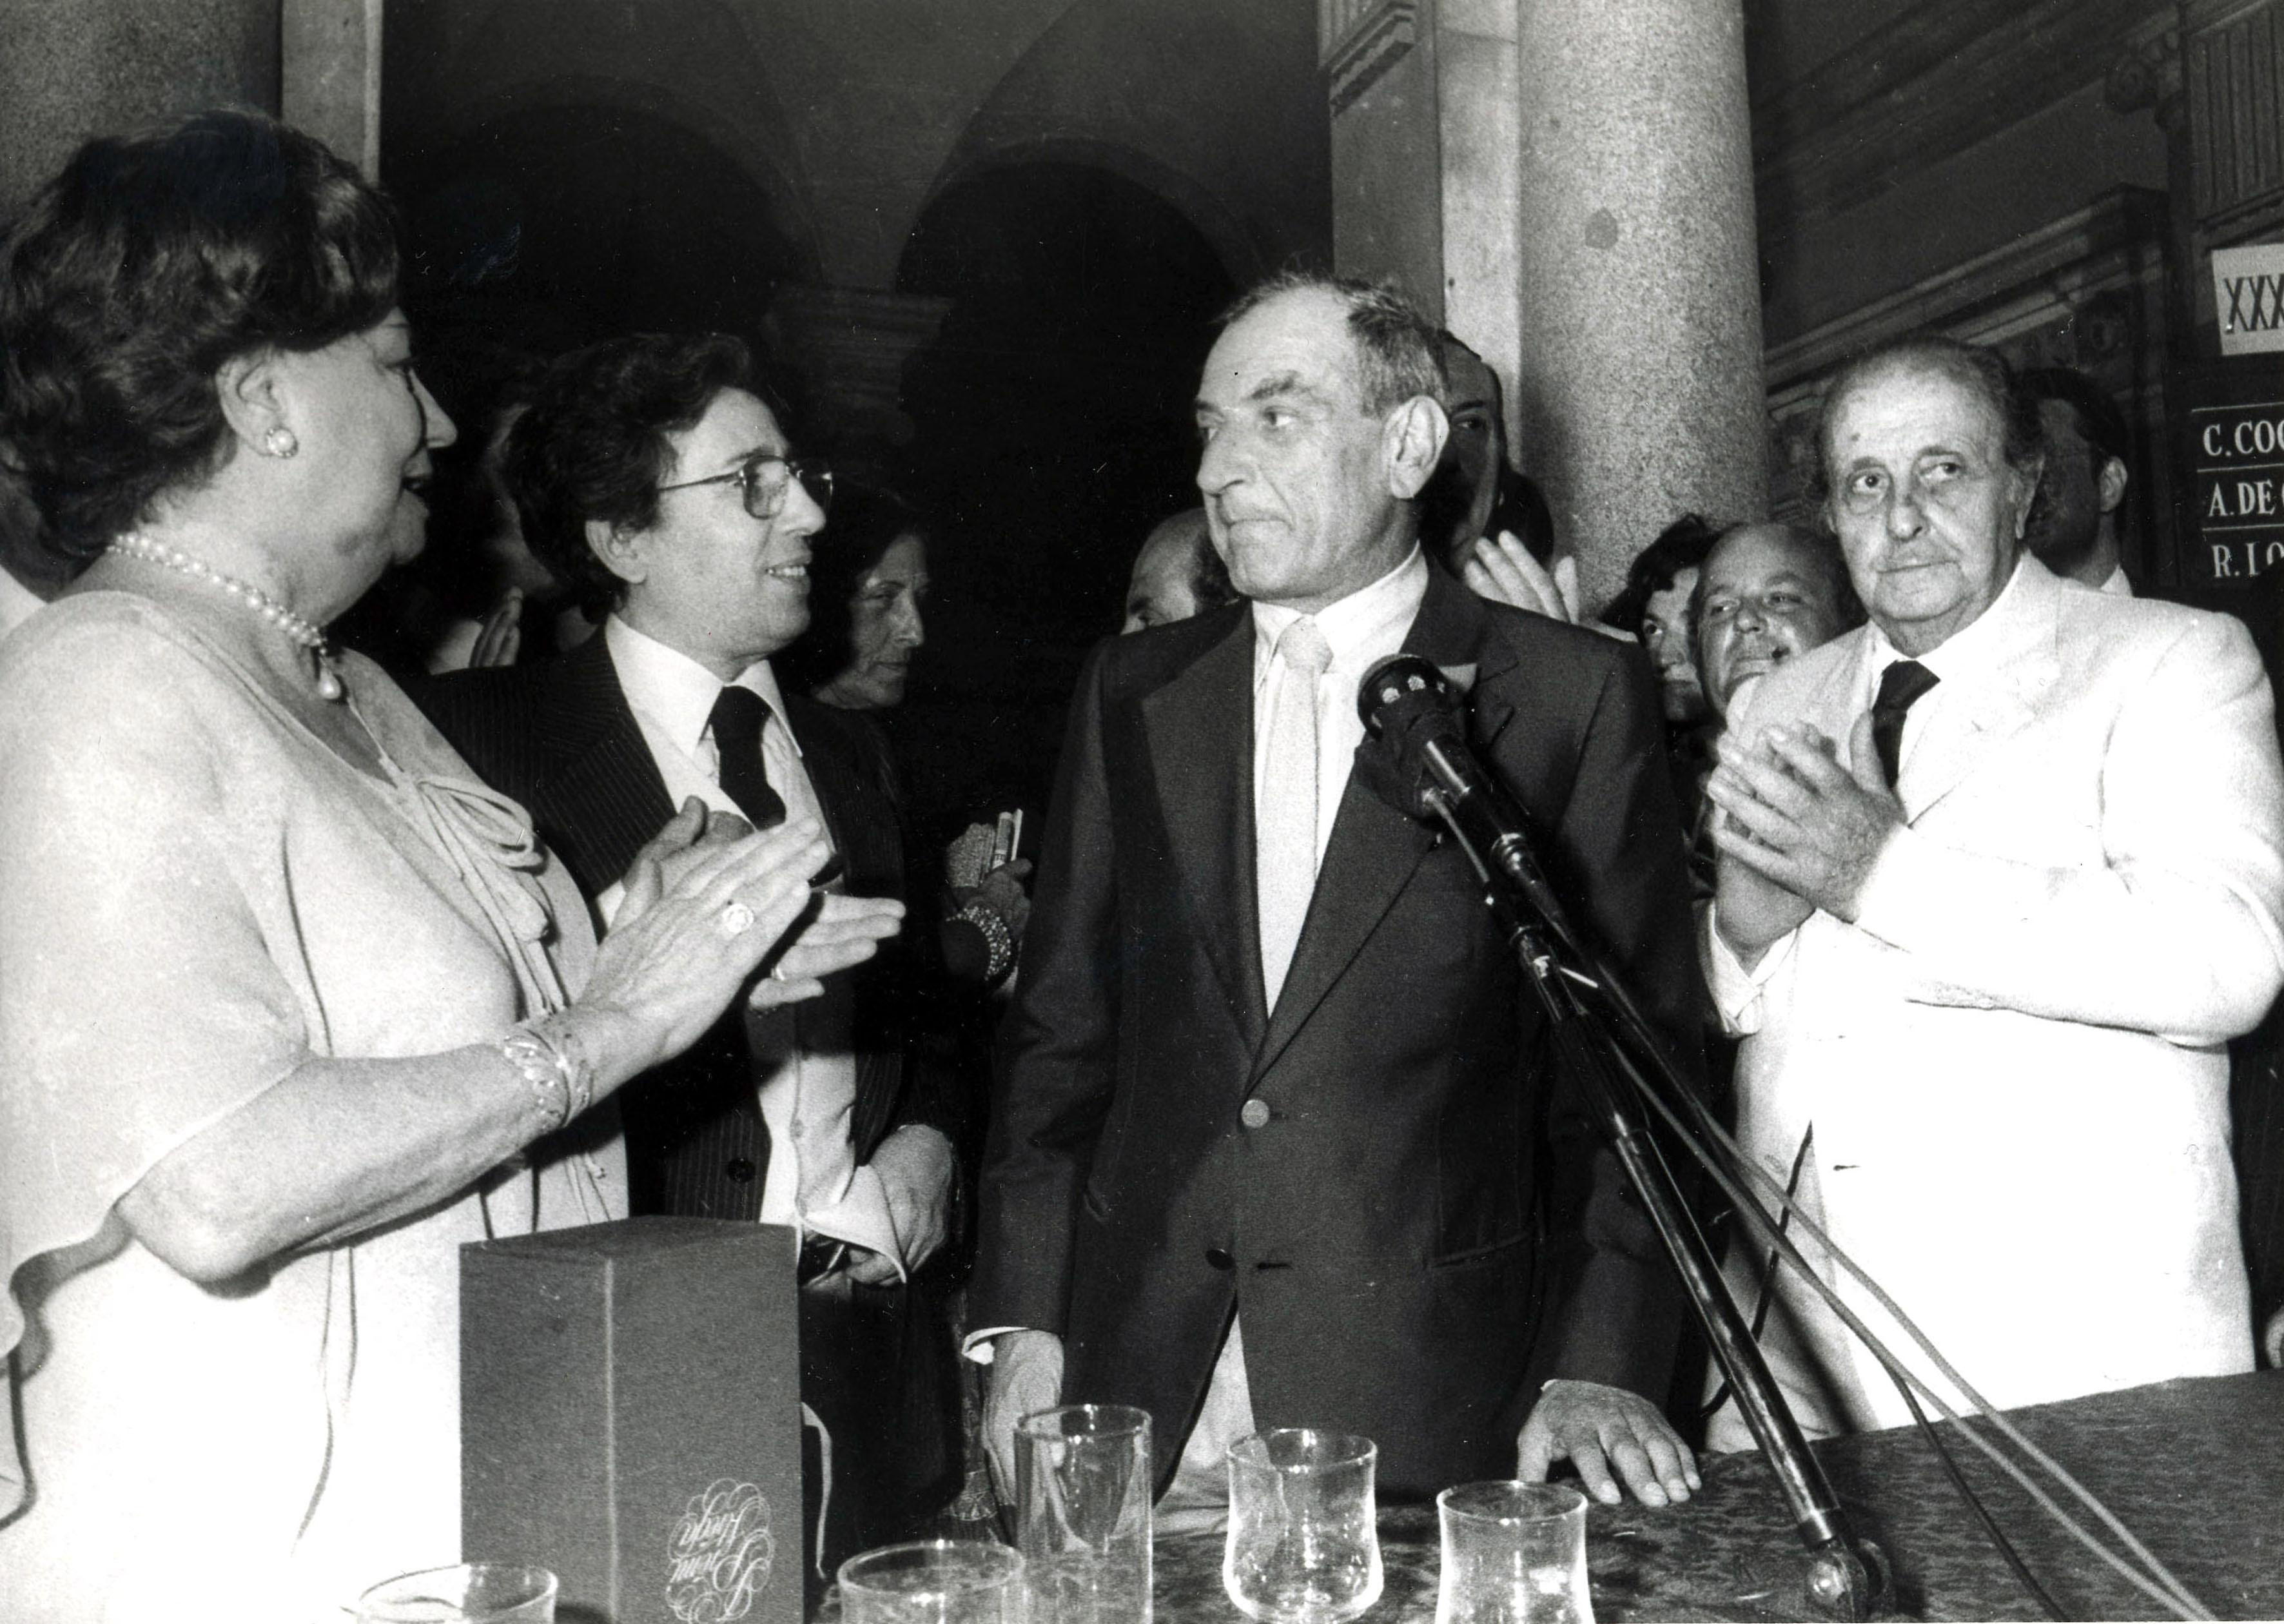 Maria Bellonci, Goffredo Parise, vincitore Premio Strega 1982 con il libro Sillabario n°2, e Guido Alberti